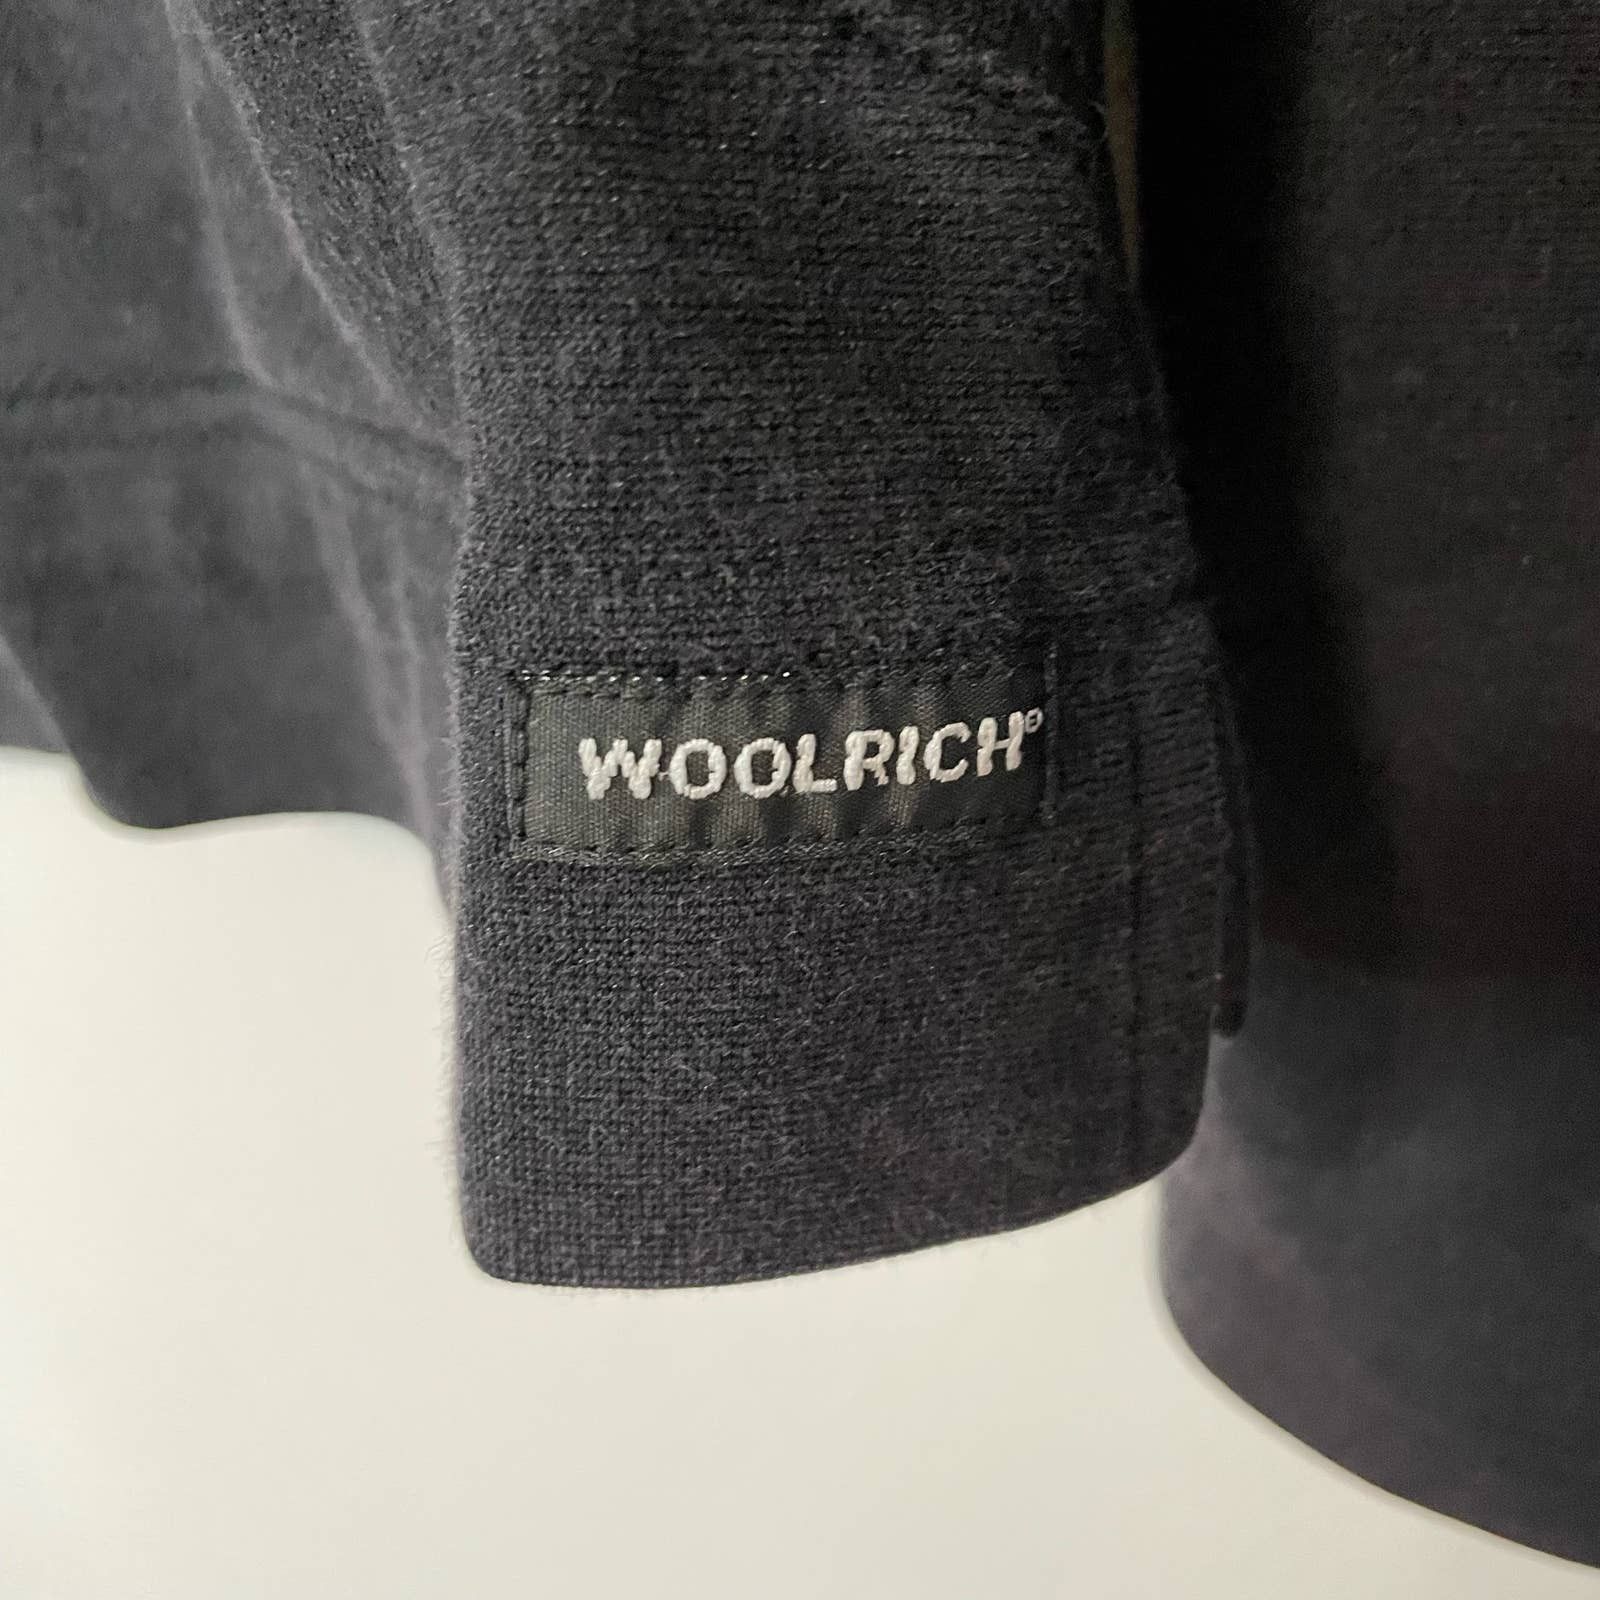 Woolrich Woolen Mills Woolrich Black Sweatshirt M Full Zip Hooded Casual Womens Size M / US 6-8 / IT 42-44 - 3 Thumbnail